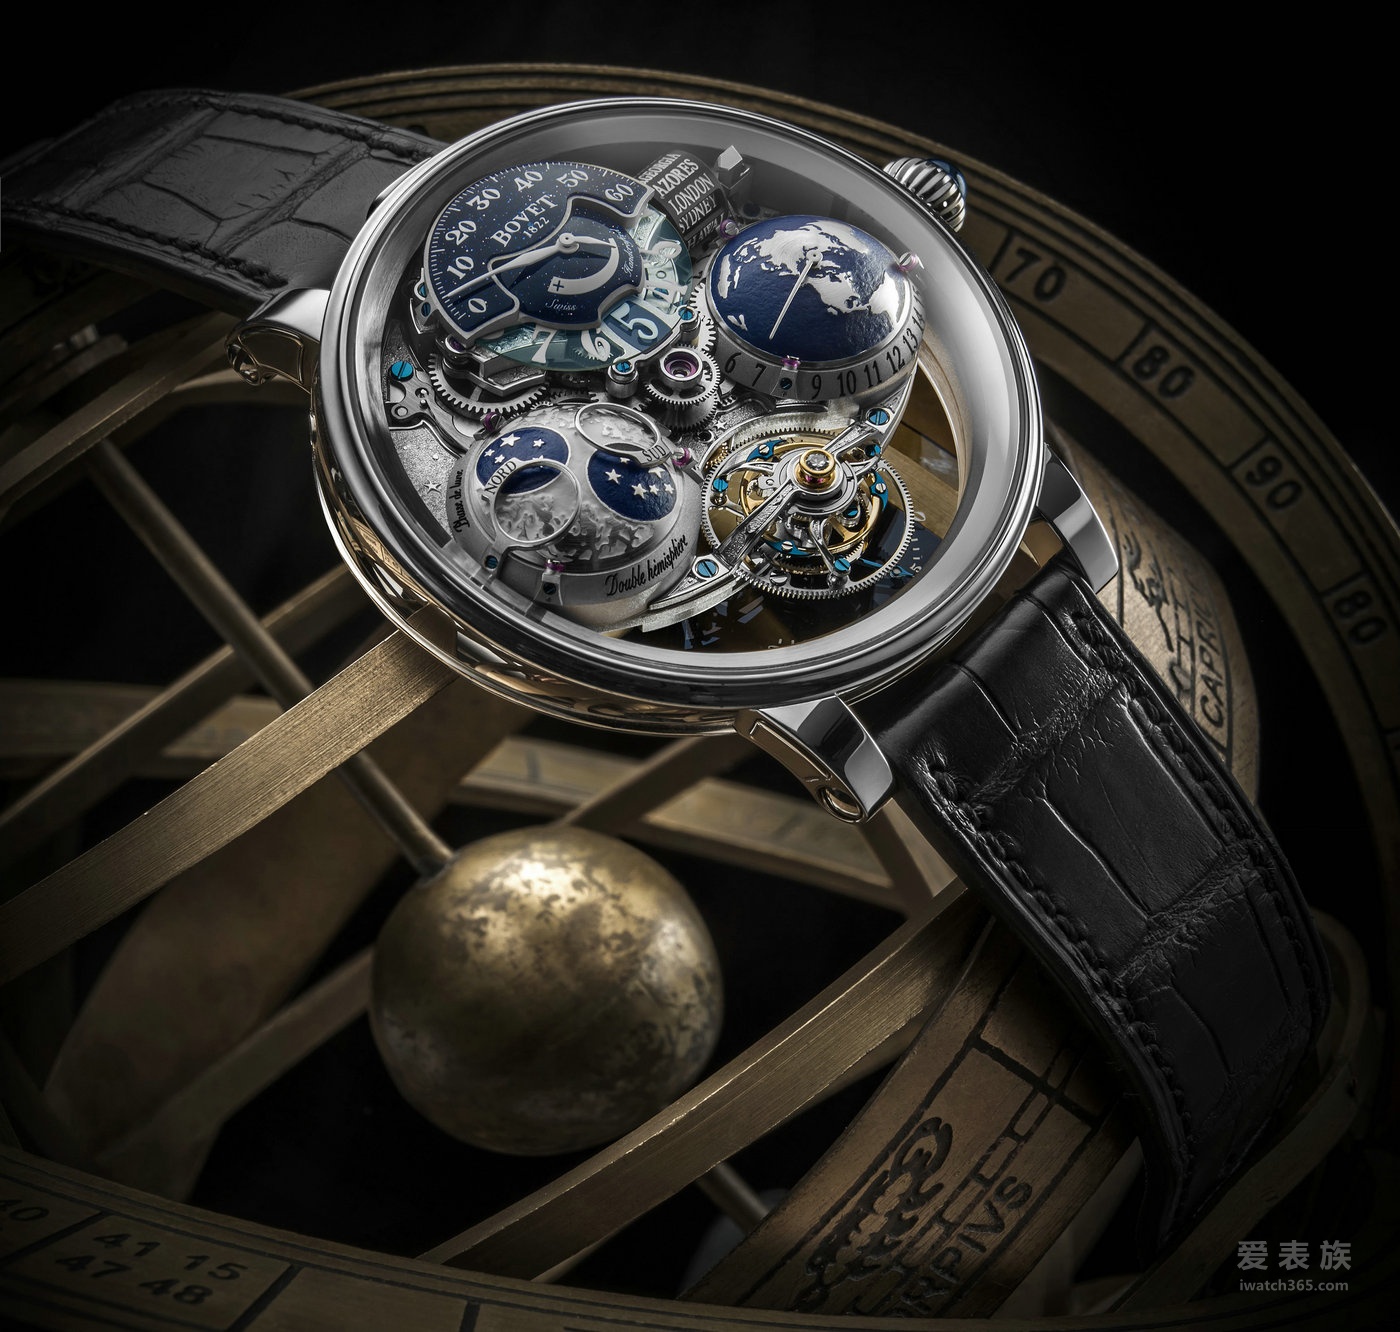 播威新款腕表 于太子珠寶鐘表呈獻的表壇盛事World Brand Piazza 2016隆重登場